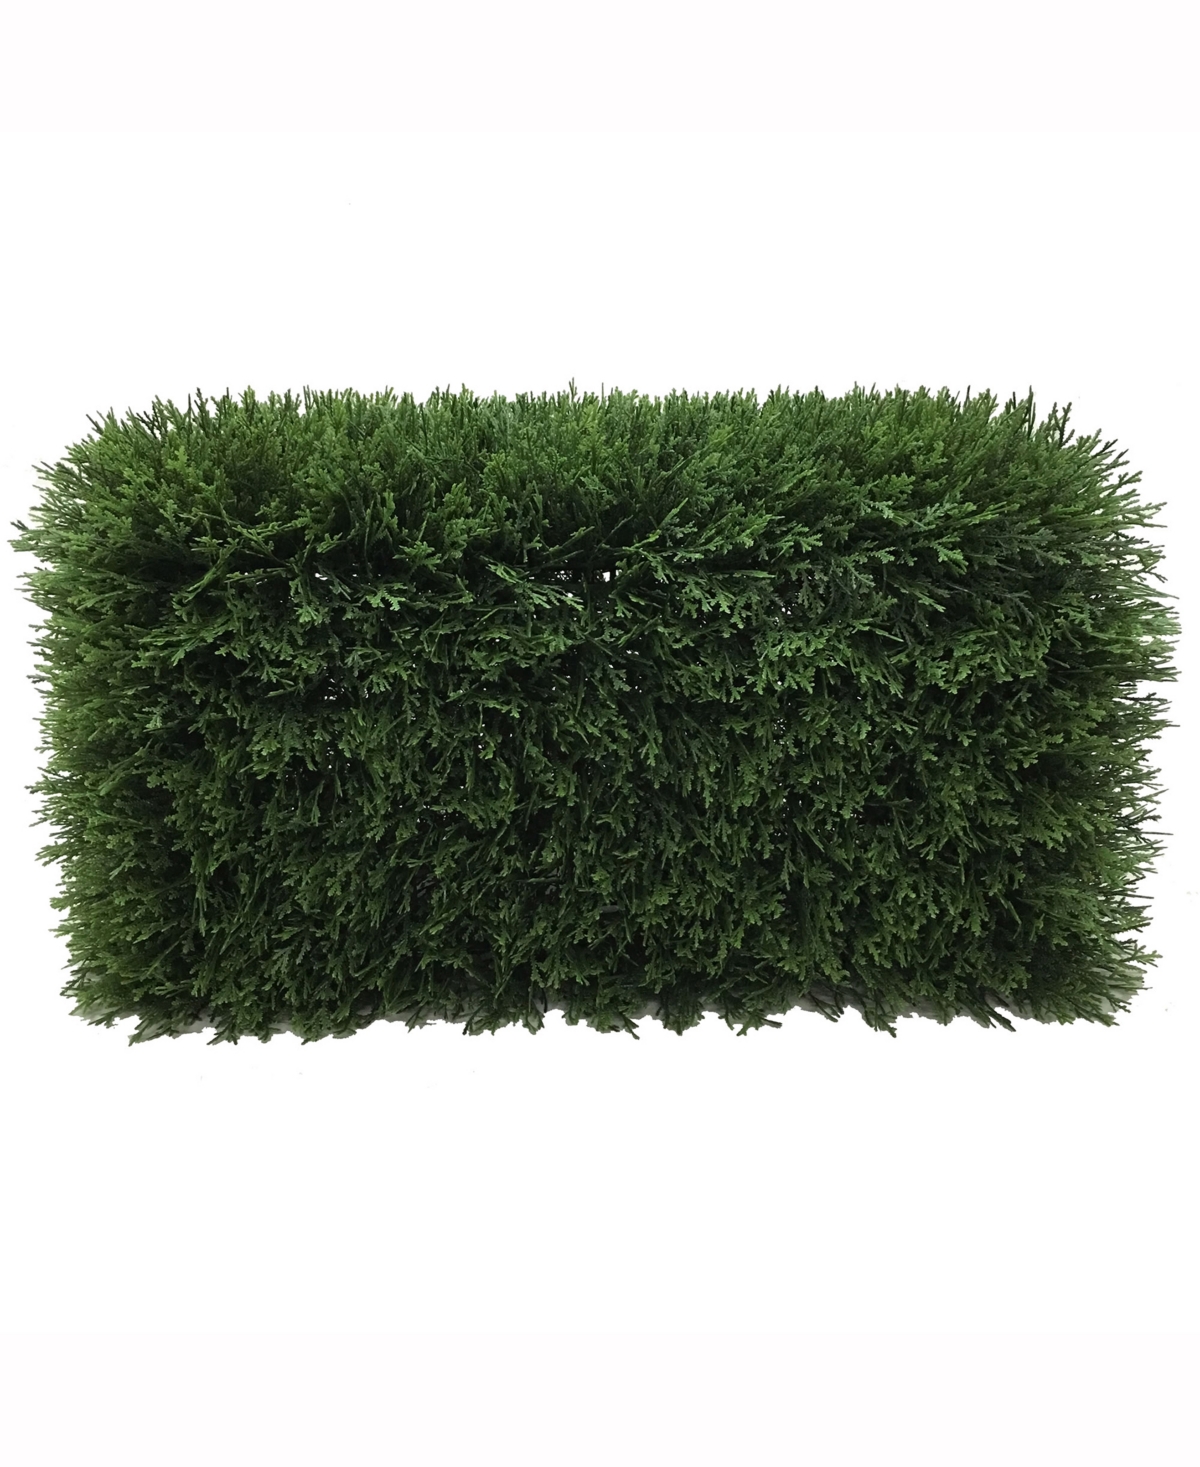 Vickerman Artificial Green Cedar Hedge, Uv Resistant In No Color